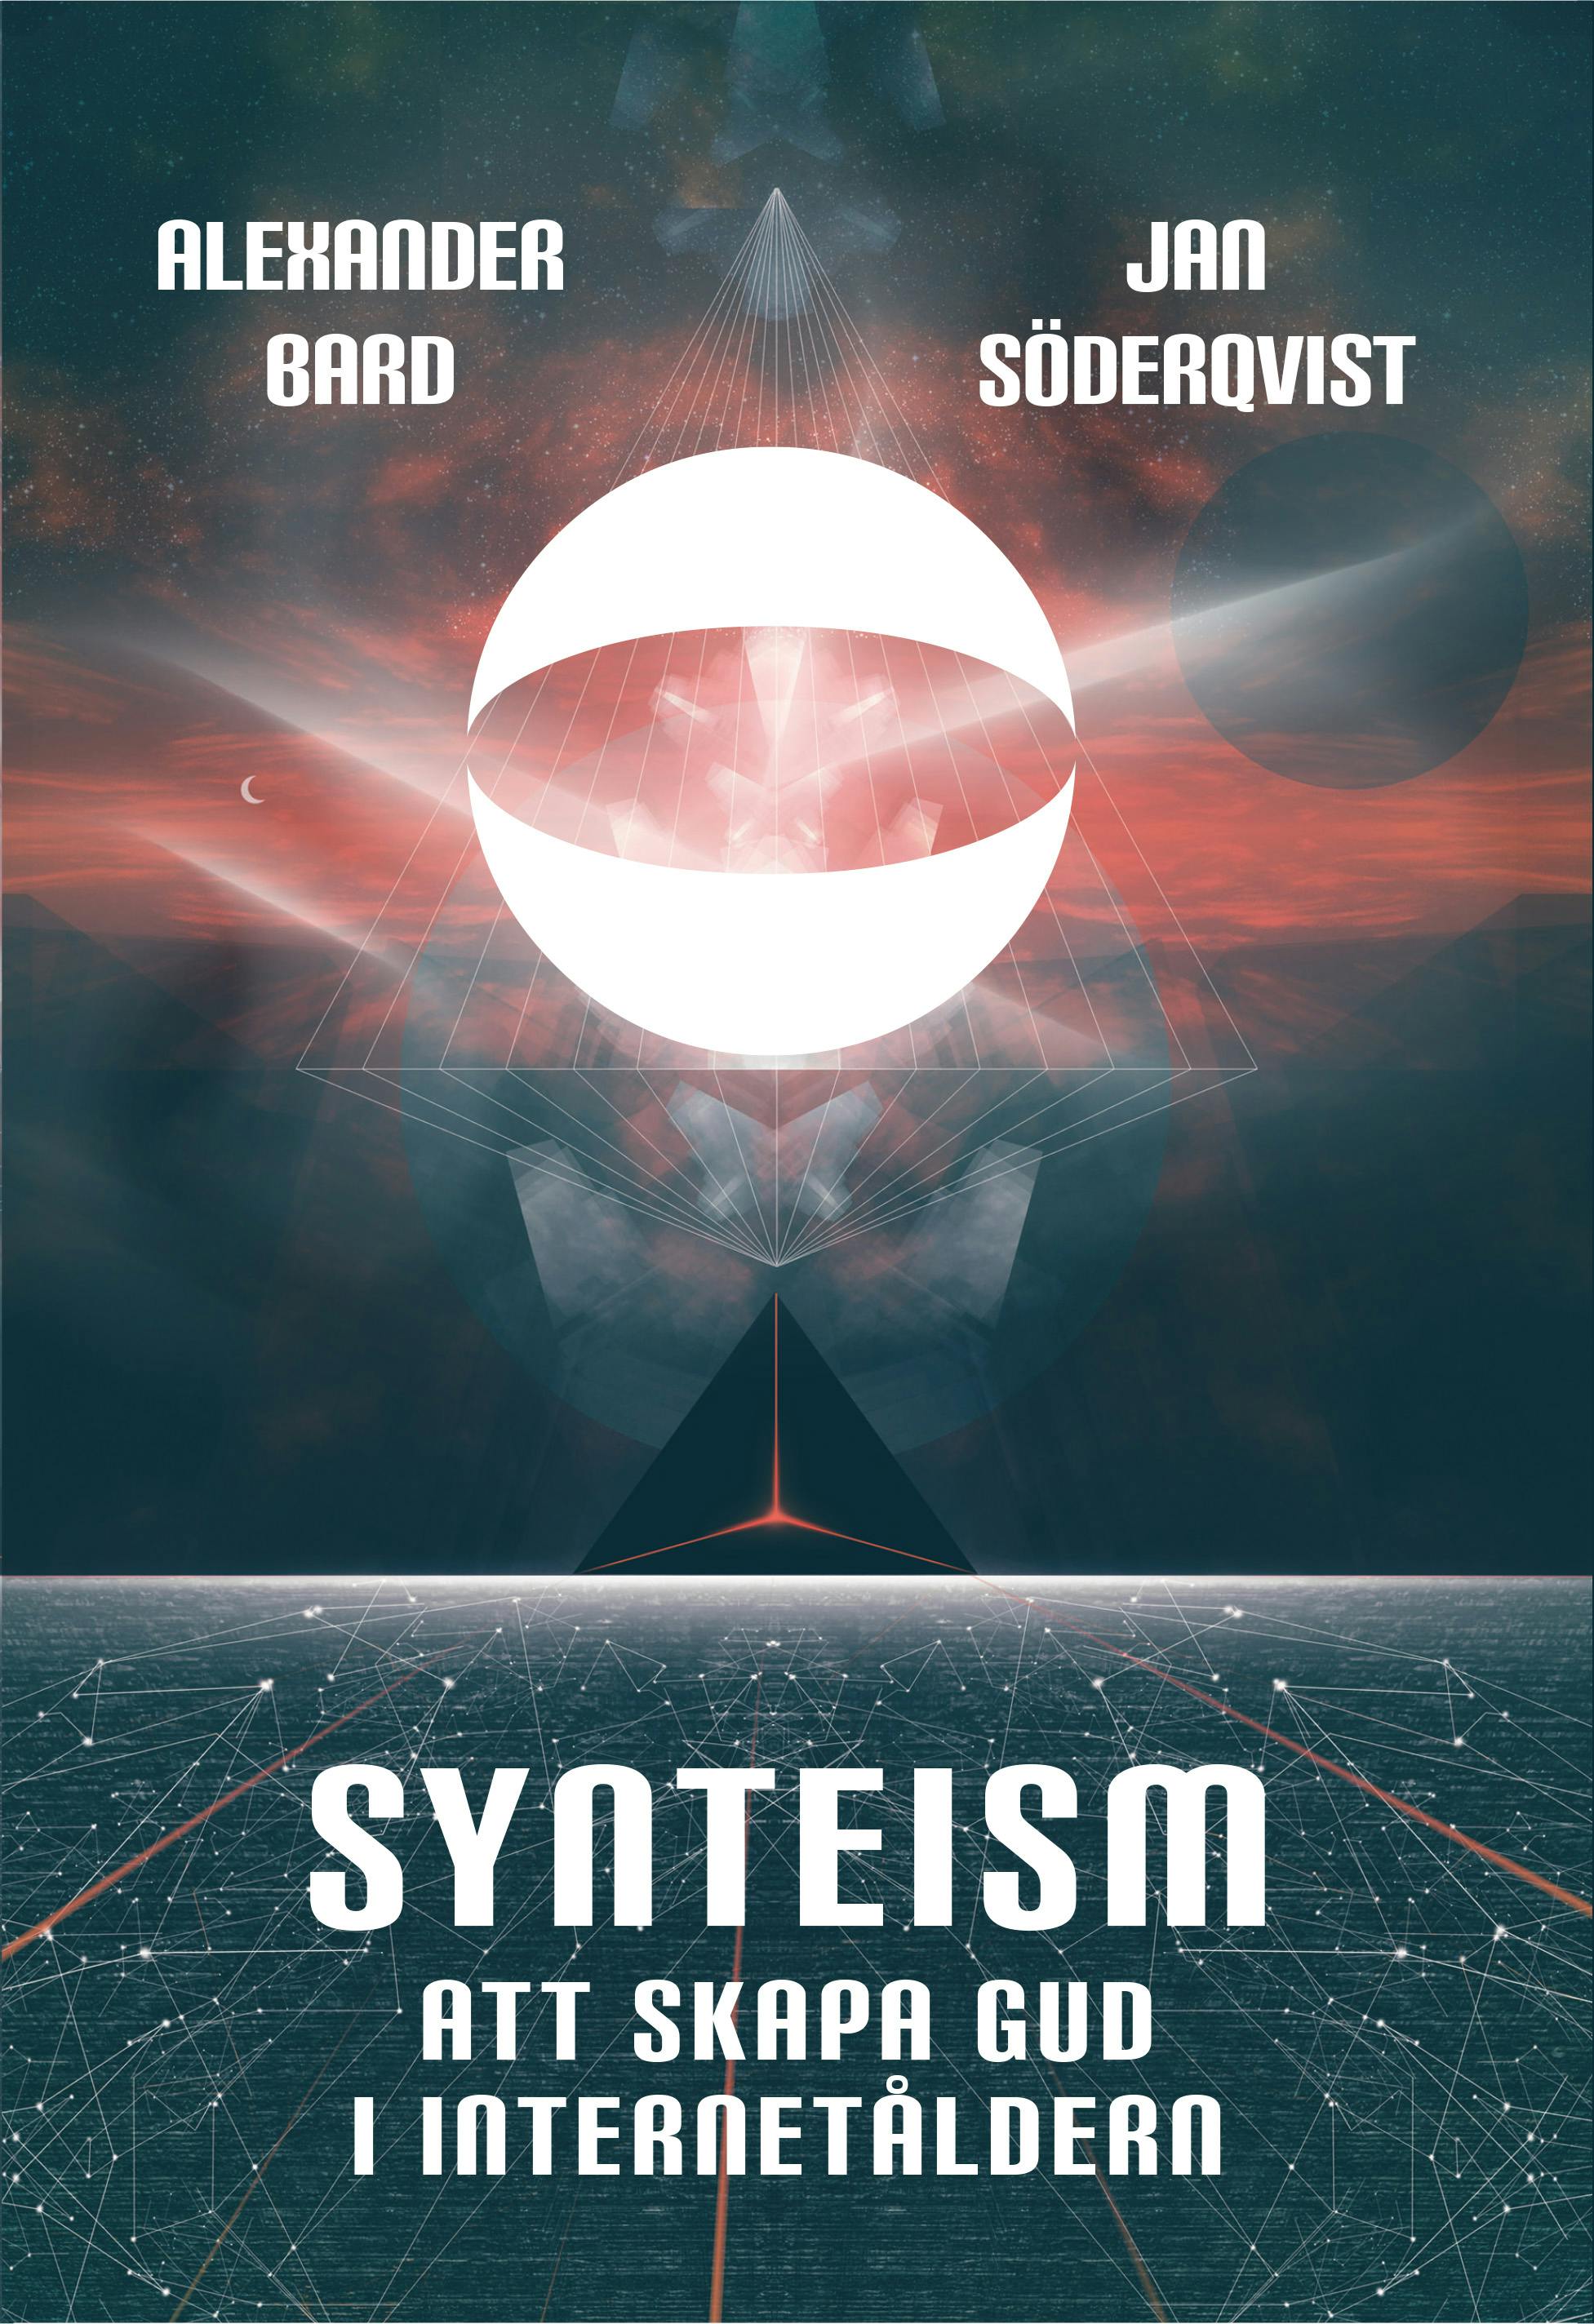 Synteism - Att skapa Gud i Internetåldern - undefined